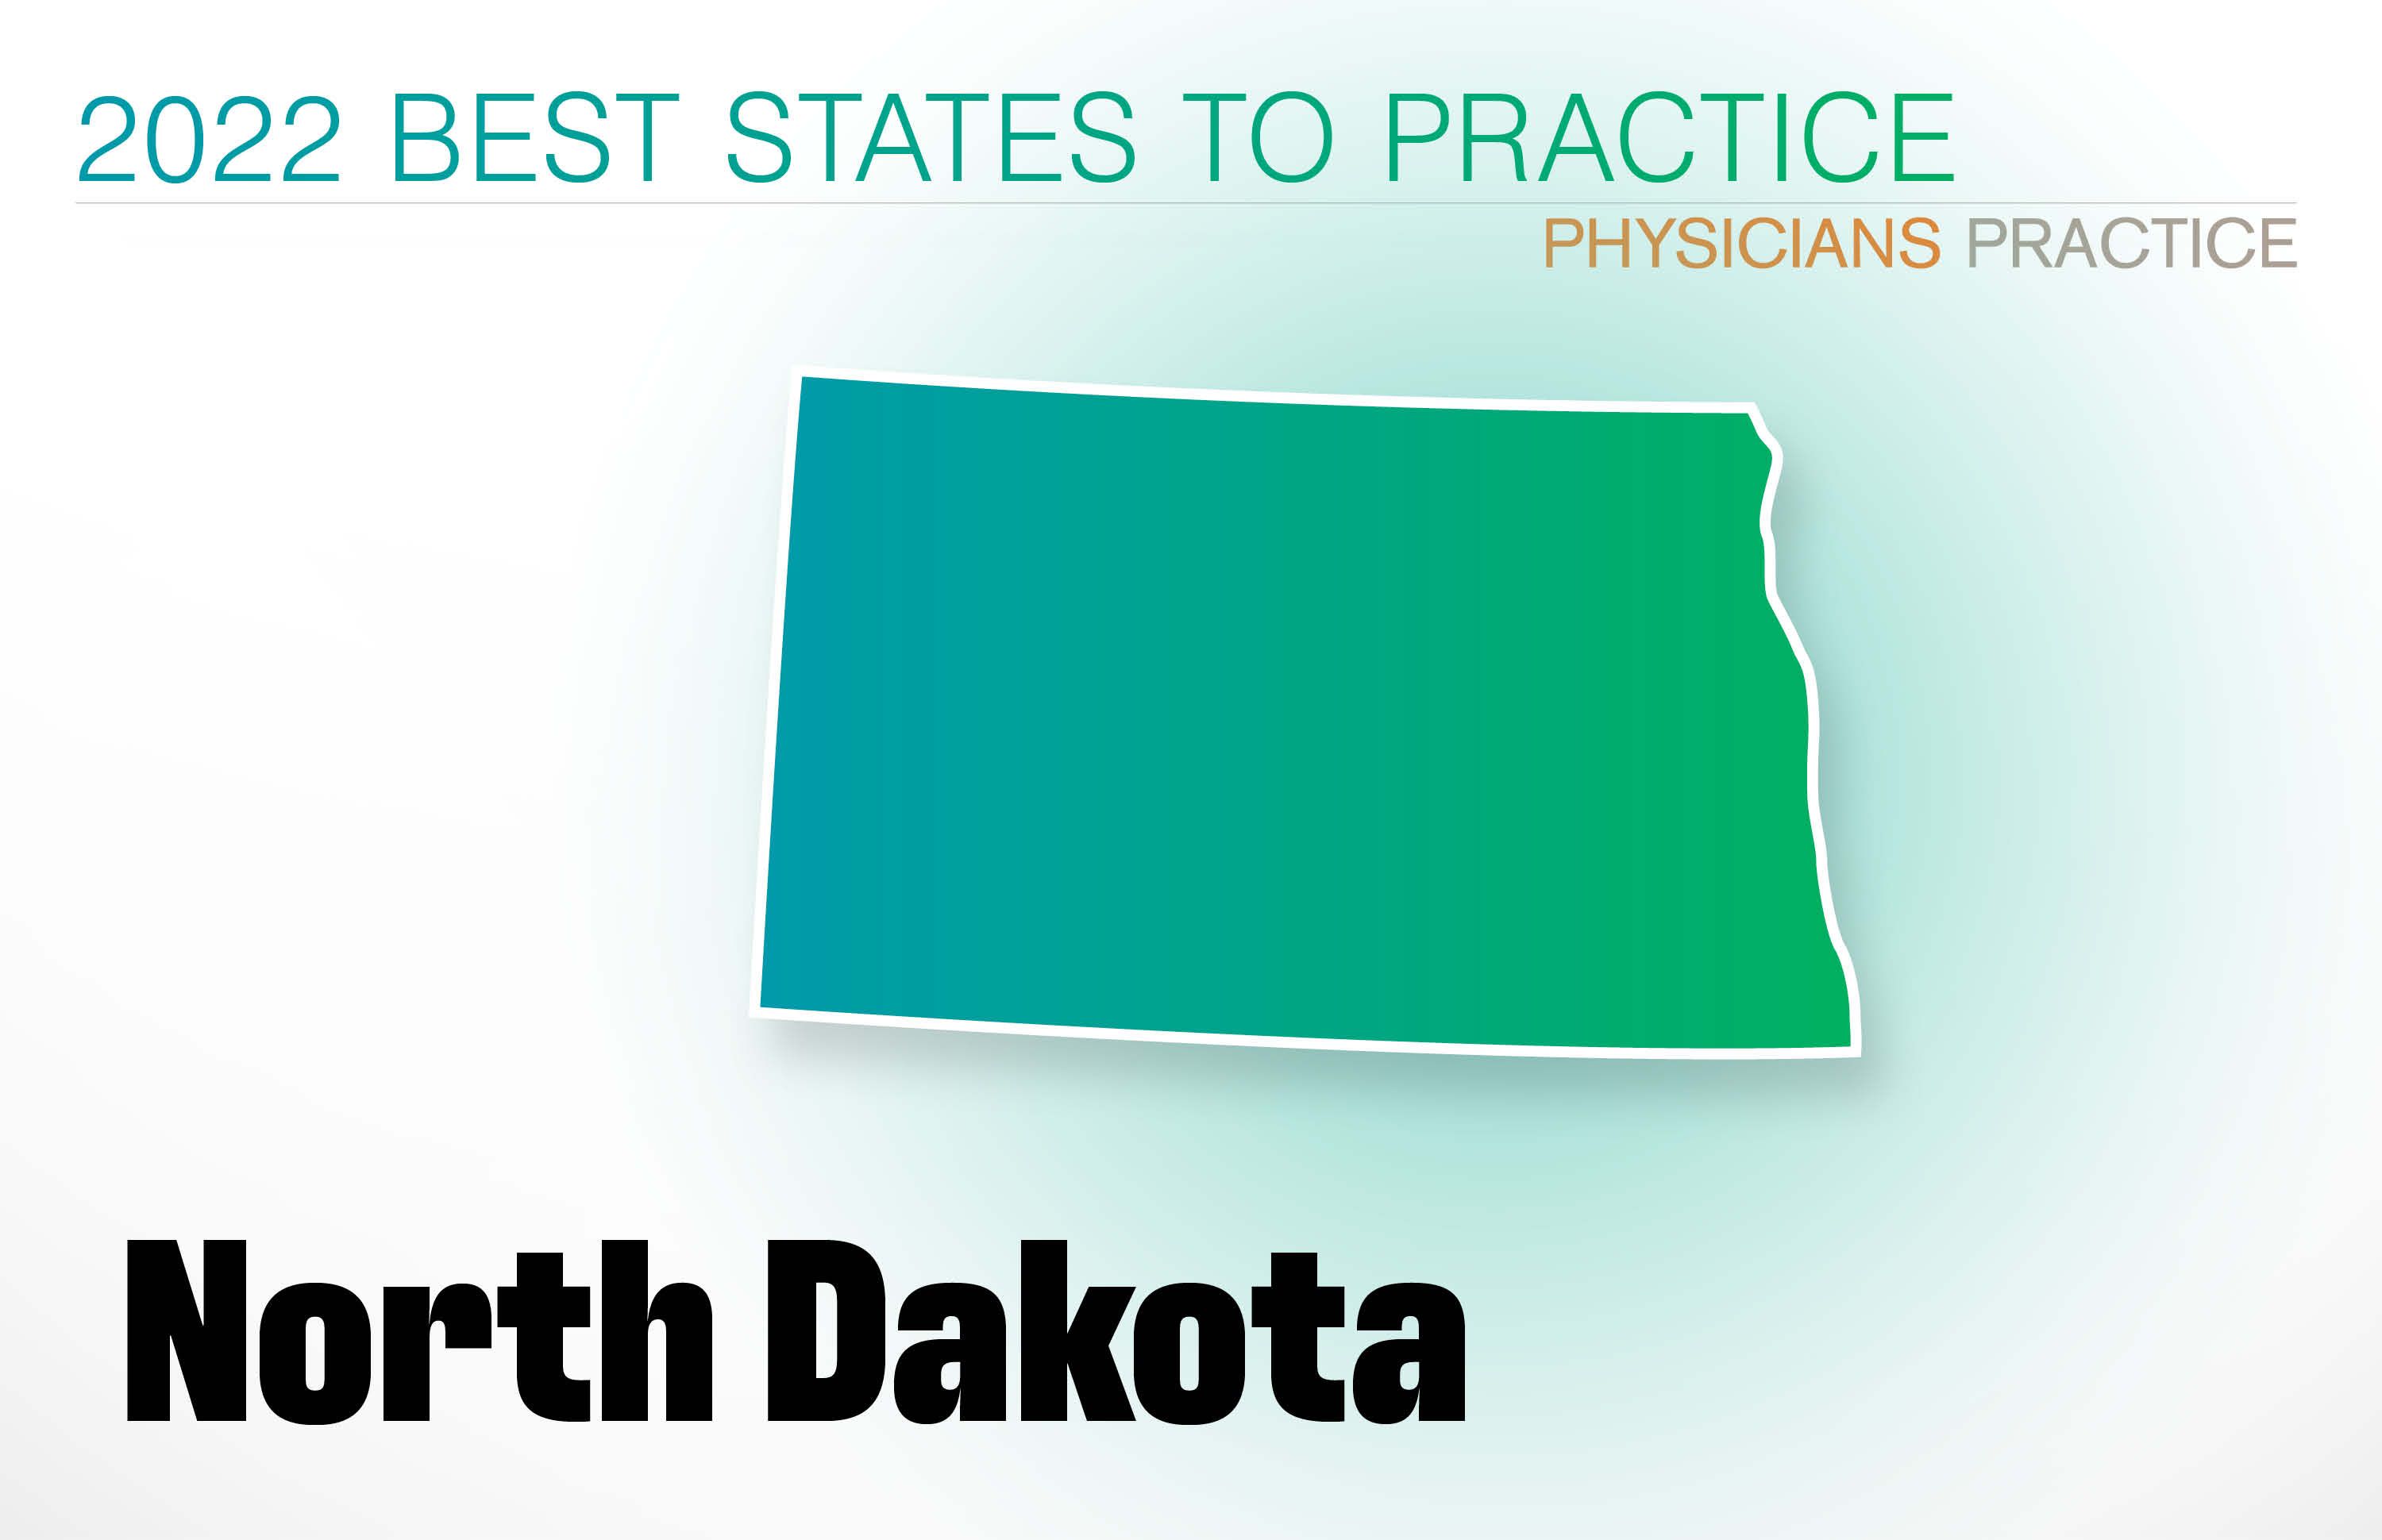 #4 North Dakota